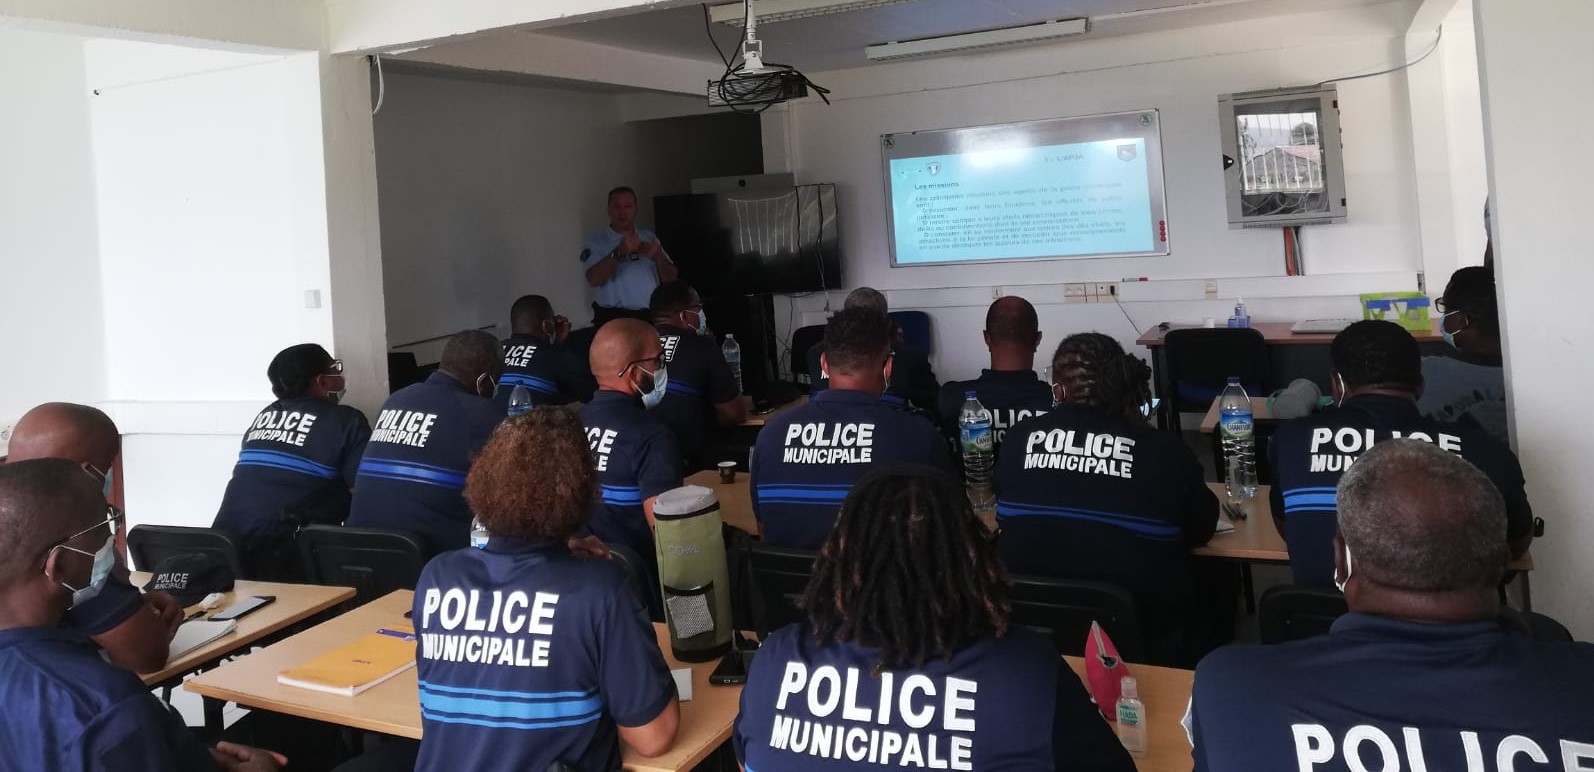     Des formations pour renforcer les liens entre la gendarmerie et les policiers municipaux de Martinique

